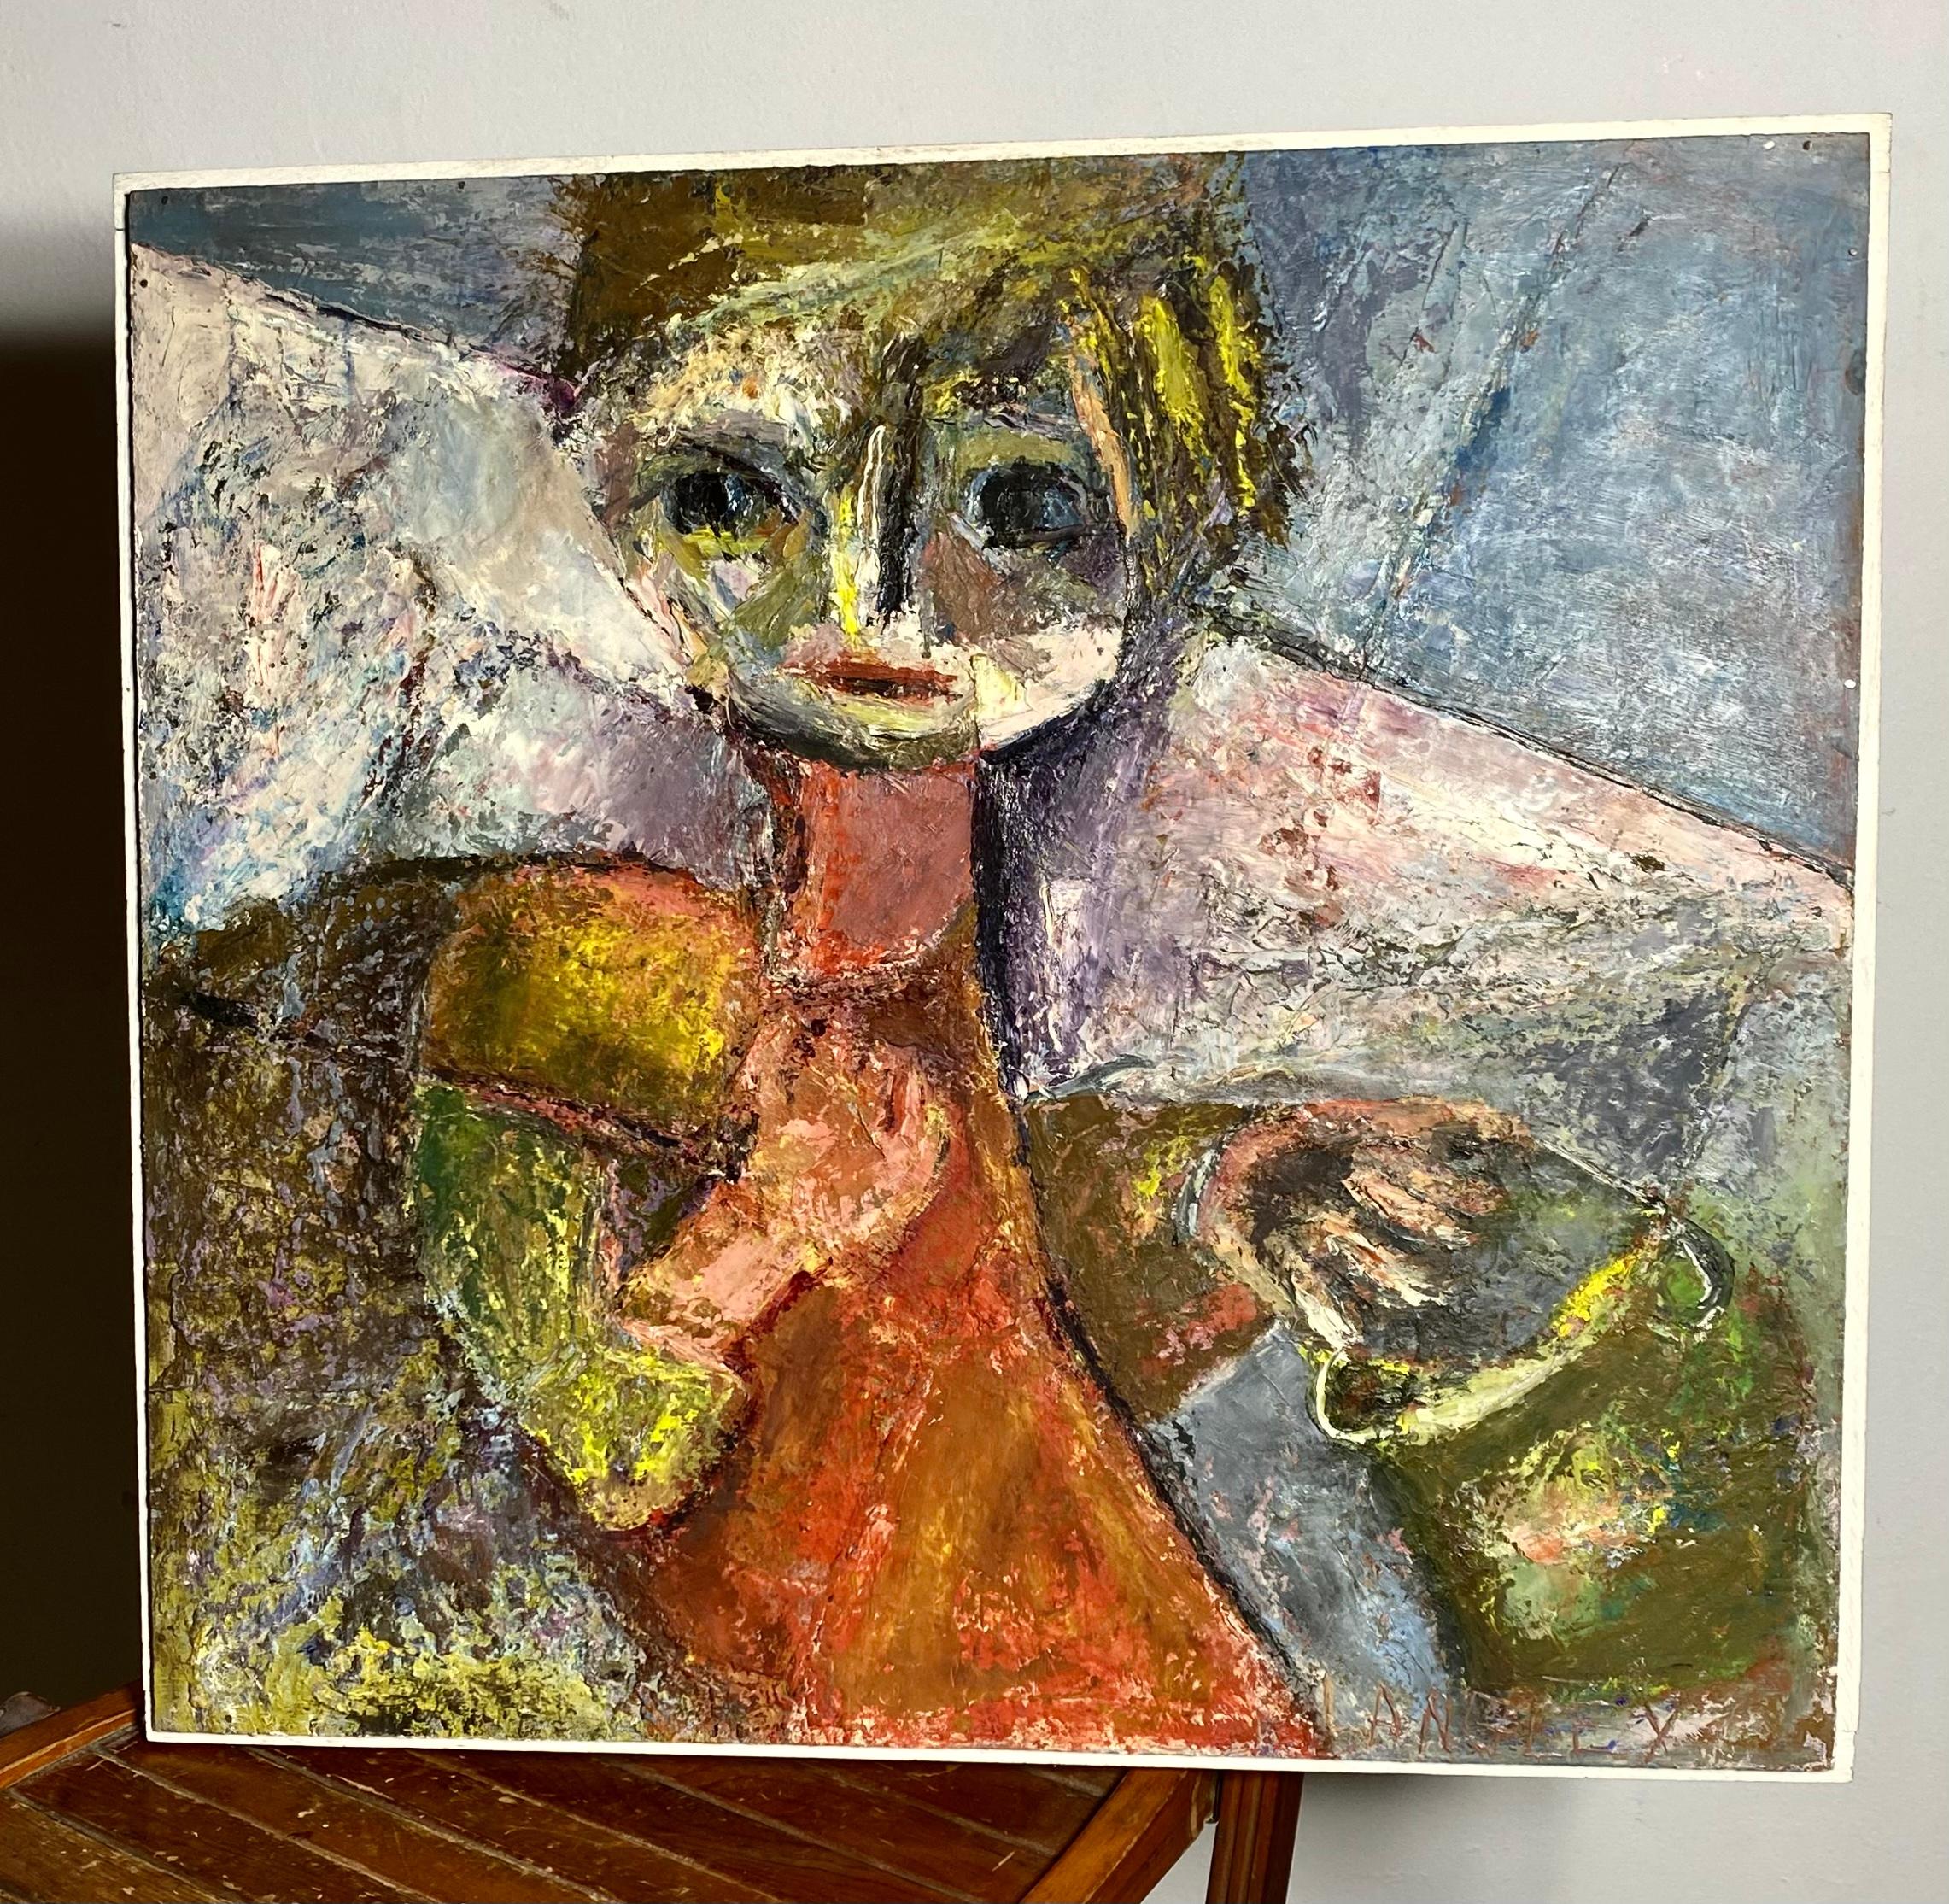 Modernist Abstract Oil Painting auf Board von WNY Künstler Kathrin Langley mit dem Titel Junge an der Buche...Gut ausgeführt,, große Verwendung von Farbe, Textur
. Katherine war für ihre abstrakten und religiösen Kunstwerke bekannt. Während ihrer